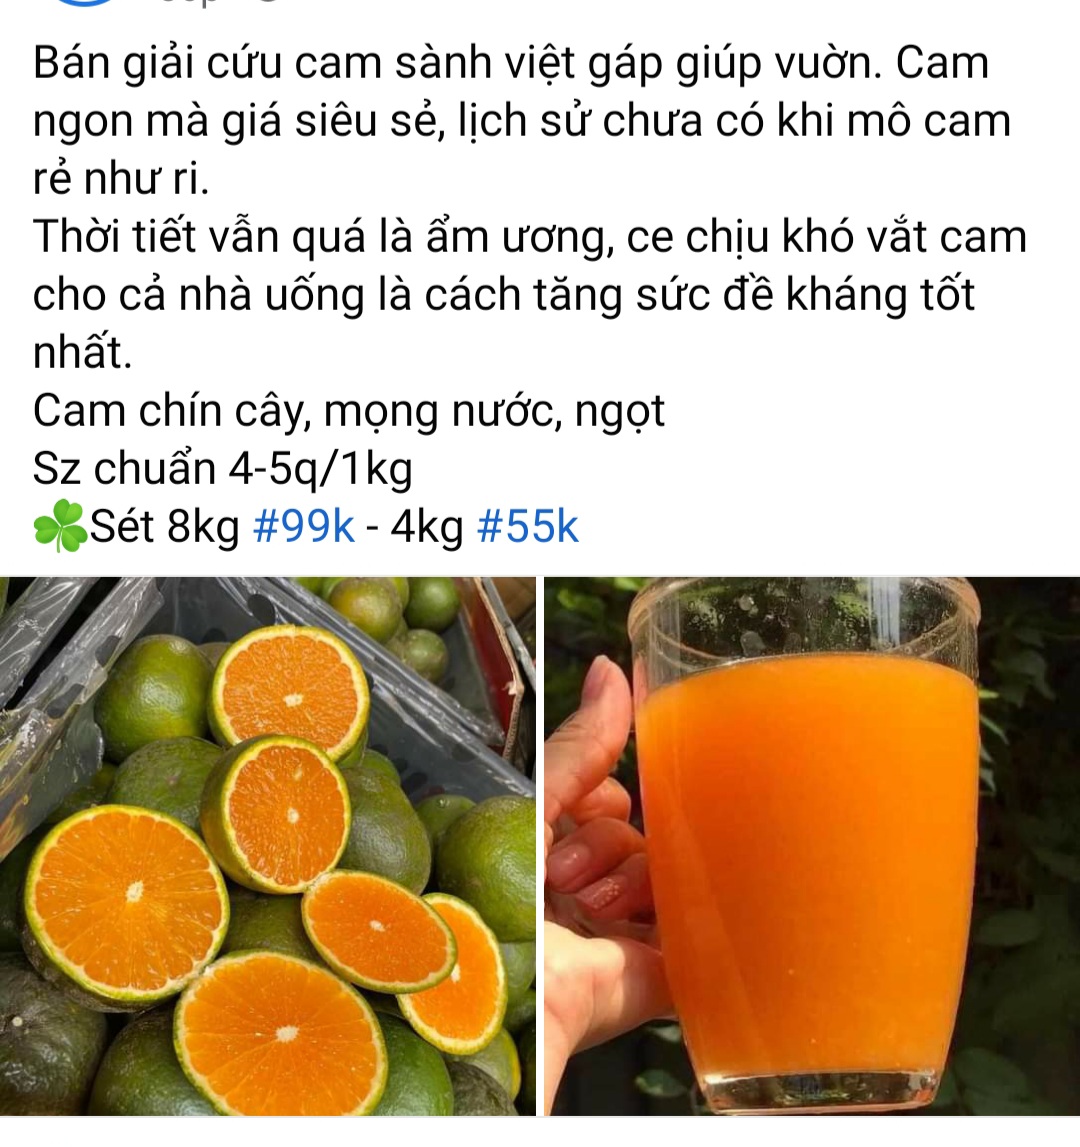 Cam sành miền Tây rớt giá thê thảm, bán lẻ chỉ còn 5.000 đồng/kg, người Sài Gòn thi nhau bán cam - Ảnh 6.